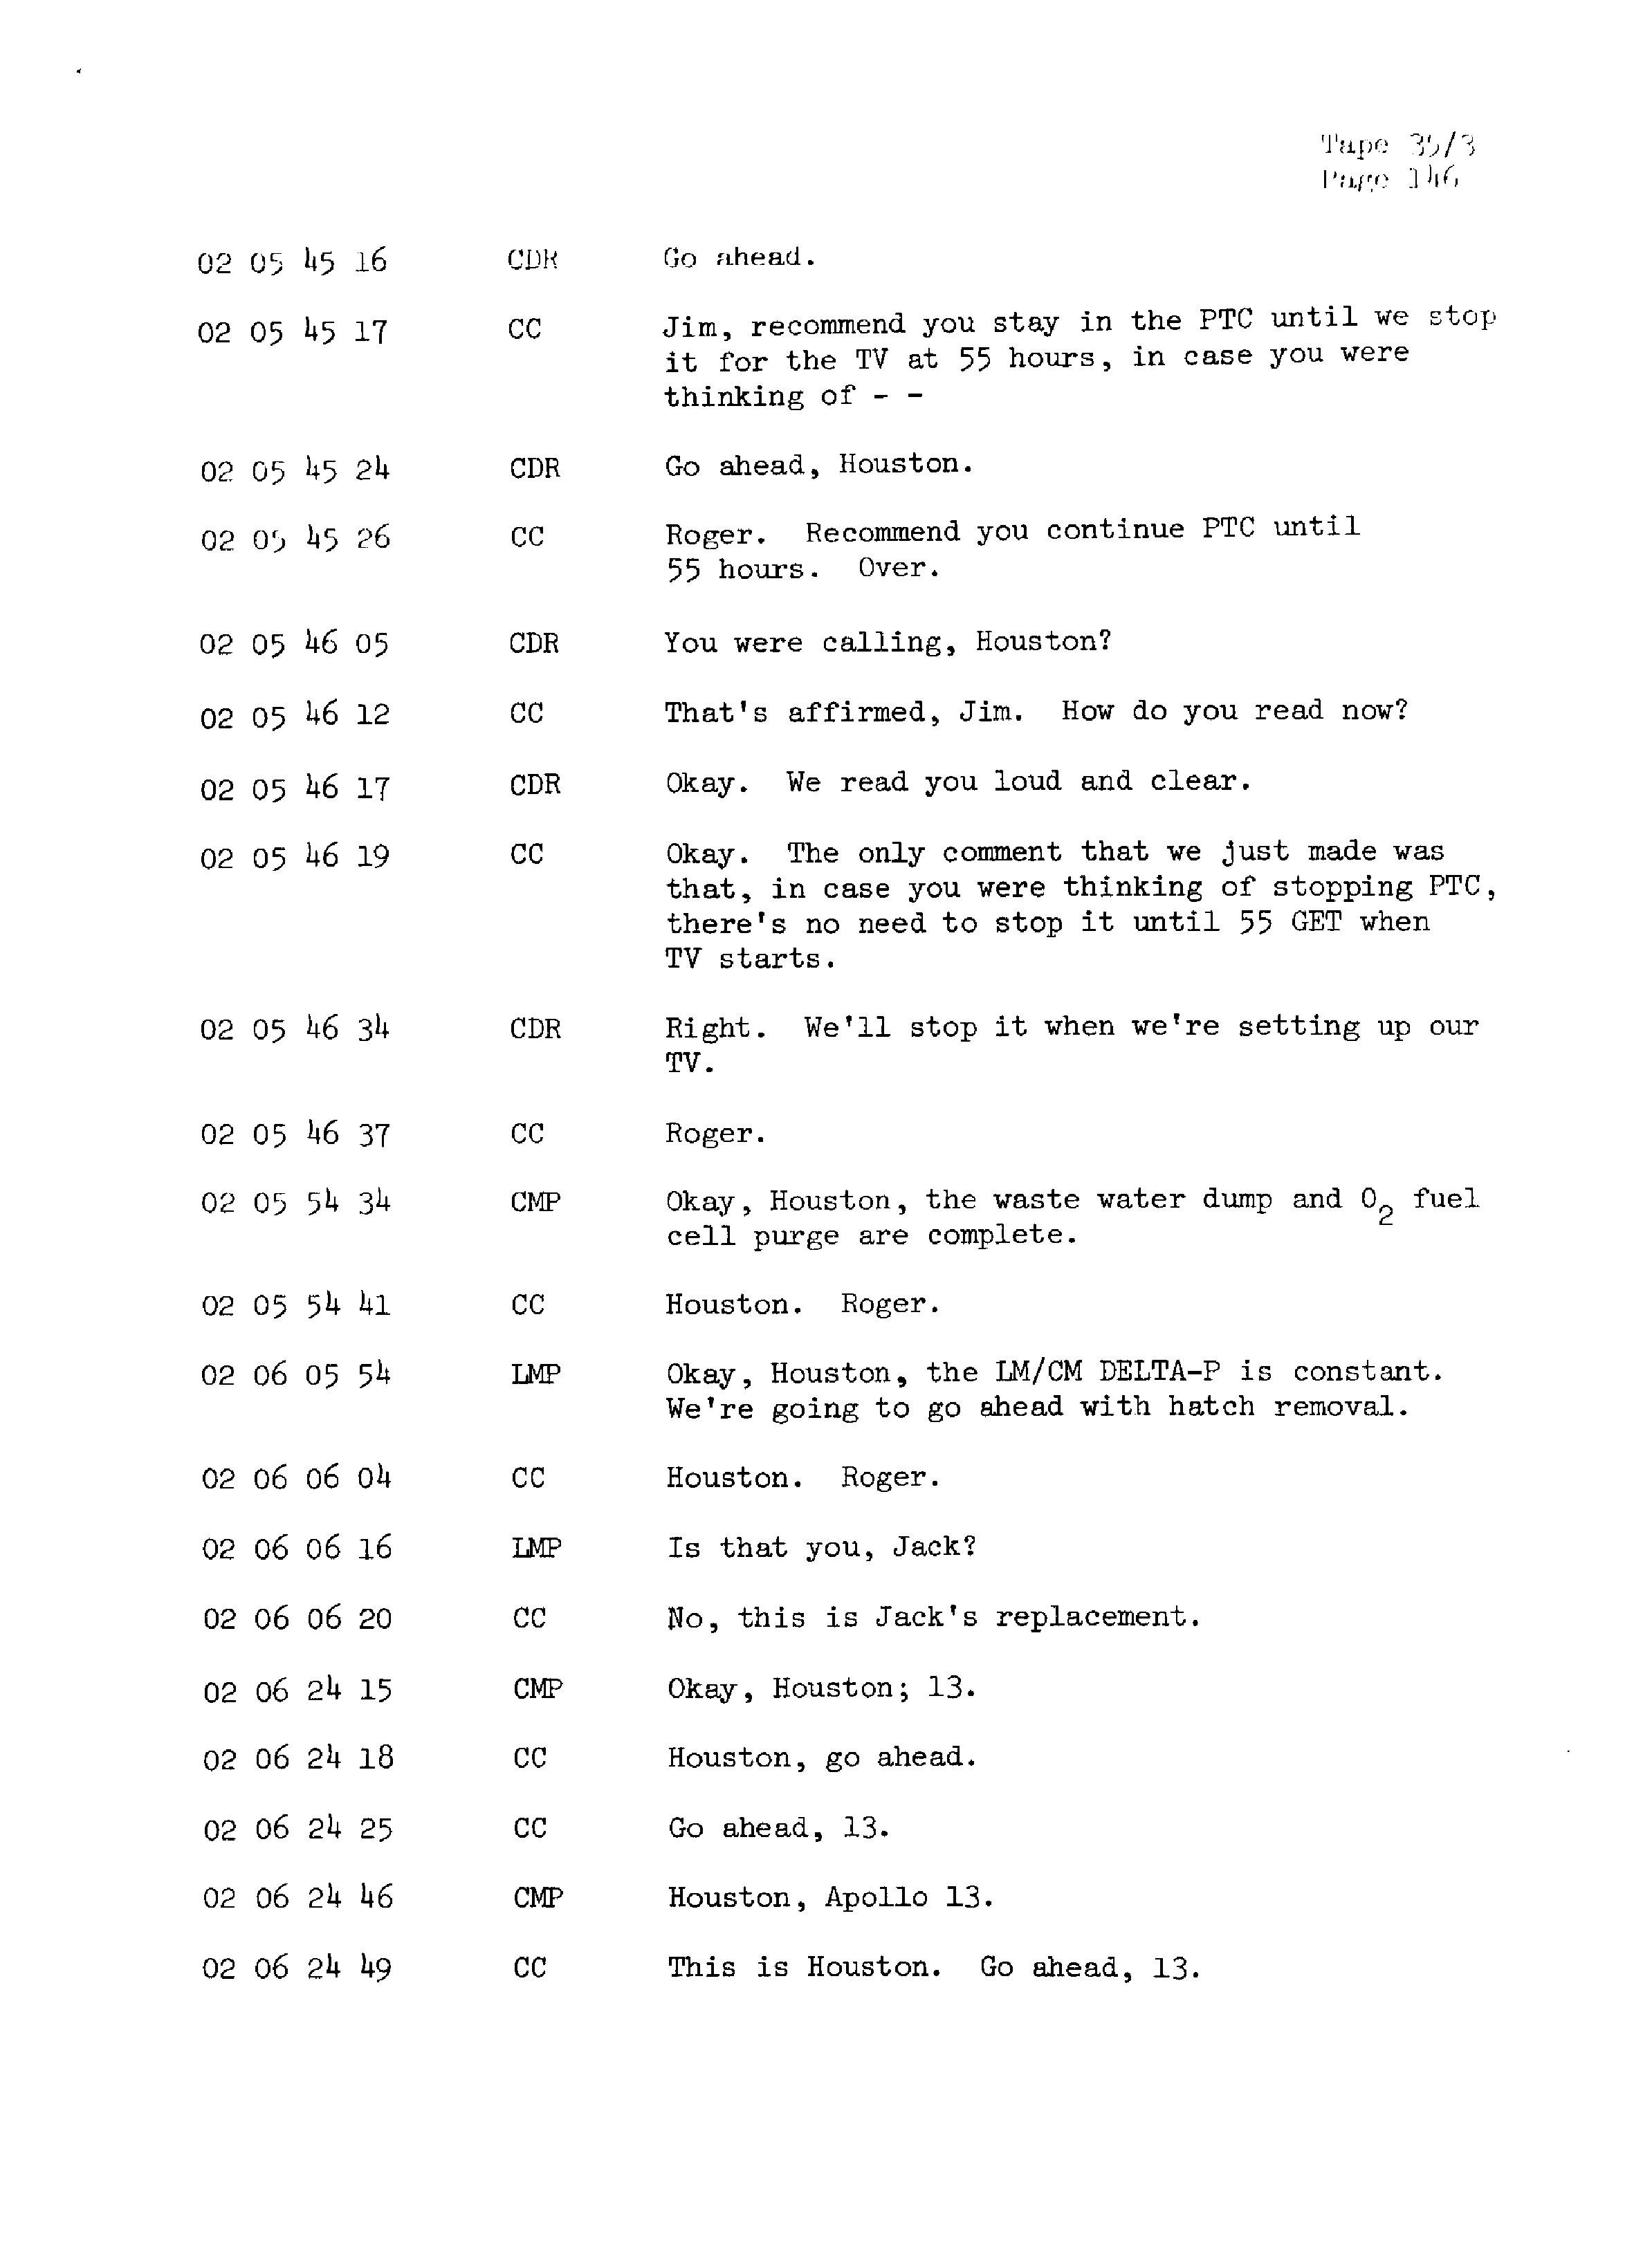 Page 153 of Apollo 13’s original transcript